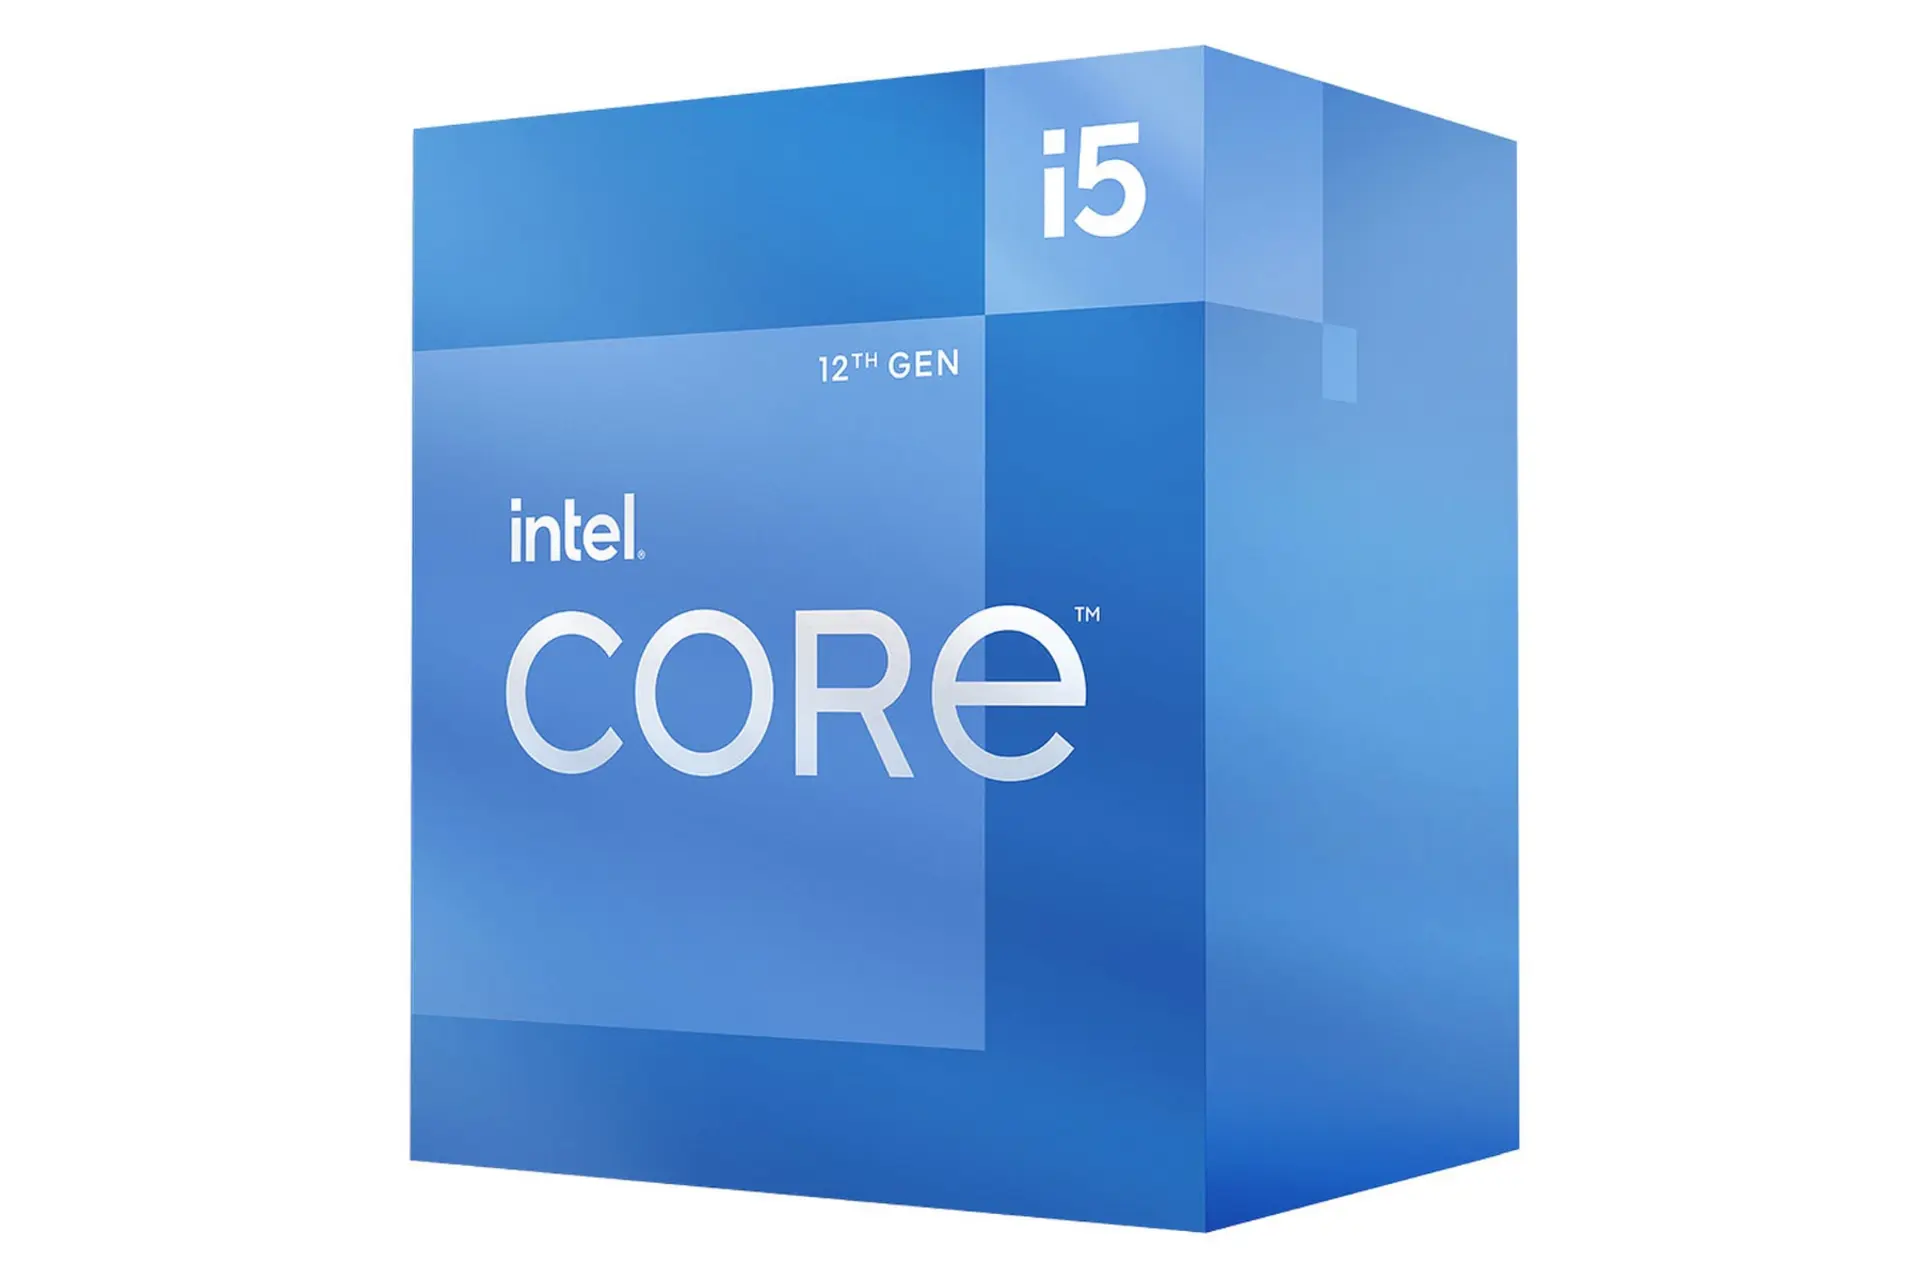 نمای راست جعبه پردازنده اینتل Core i5 نسل دوازدهم / Intel Core i5 12th Gen